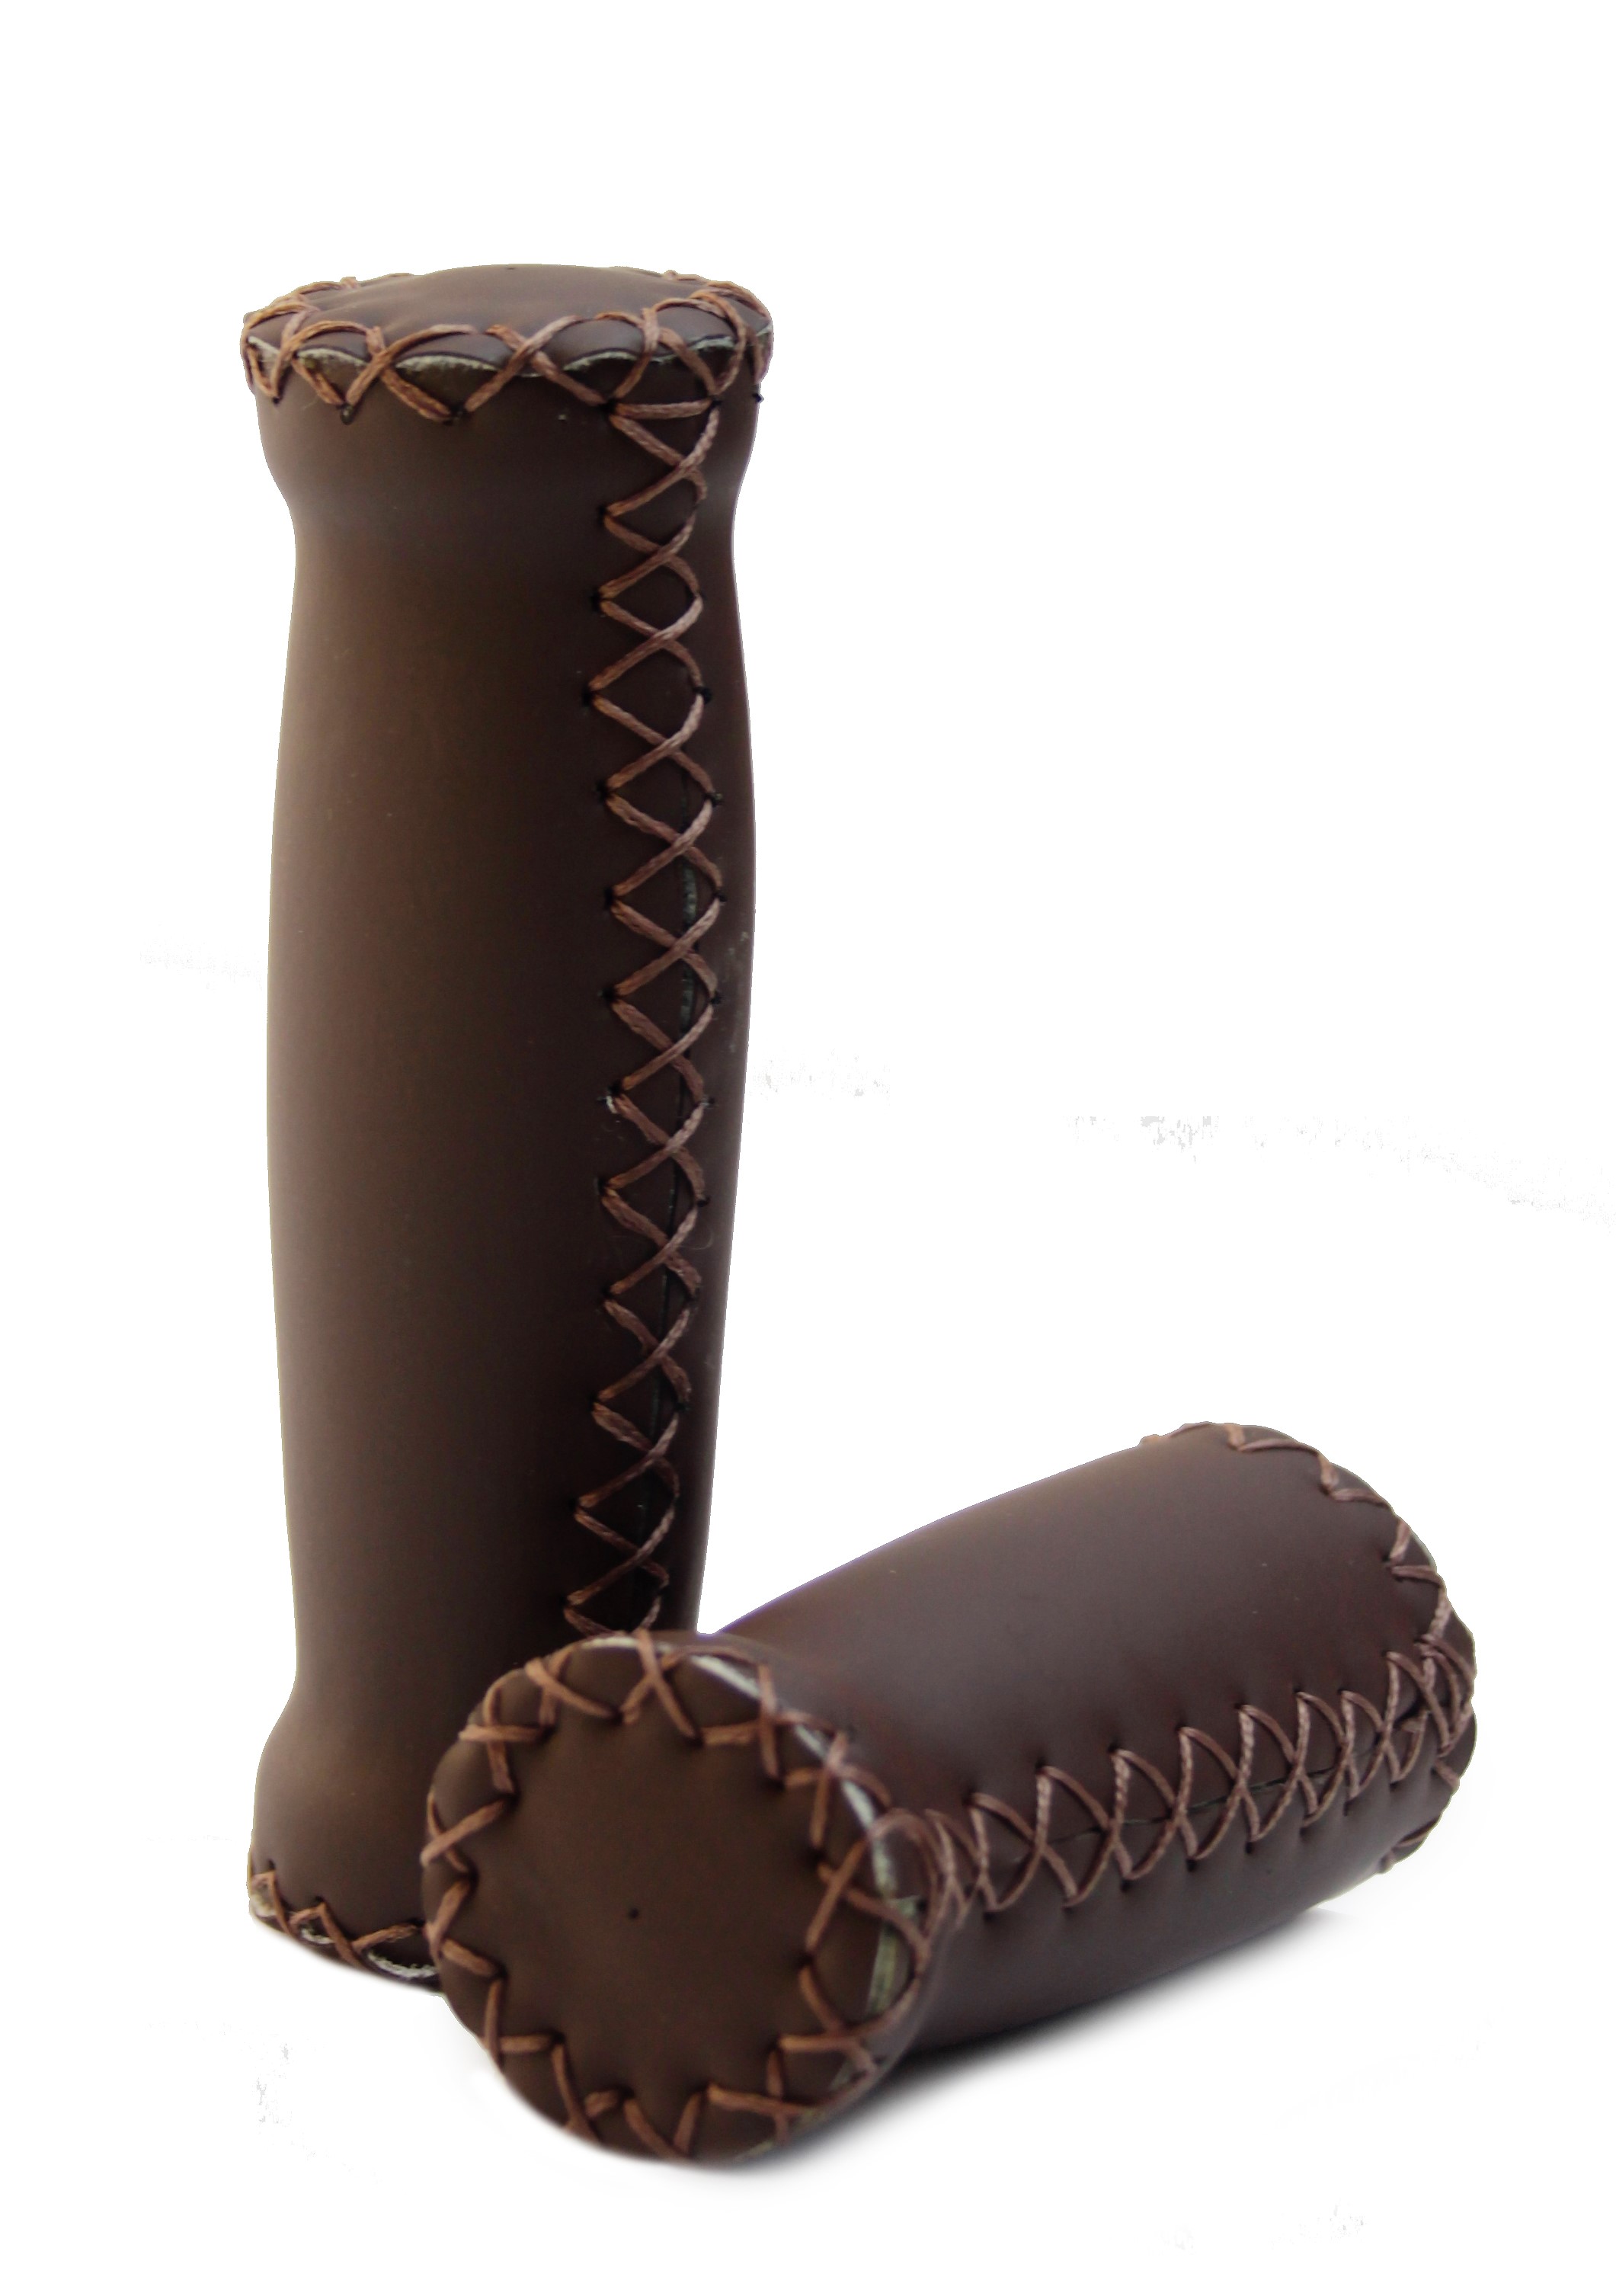 Puños de cuero (cuero artificial) en marrón oscuro con costuras exteriores, corto y largo